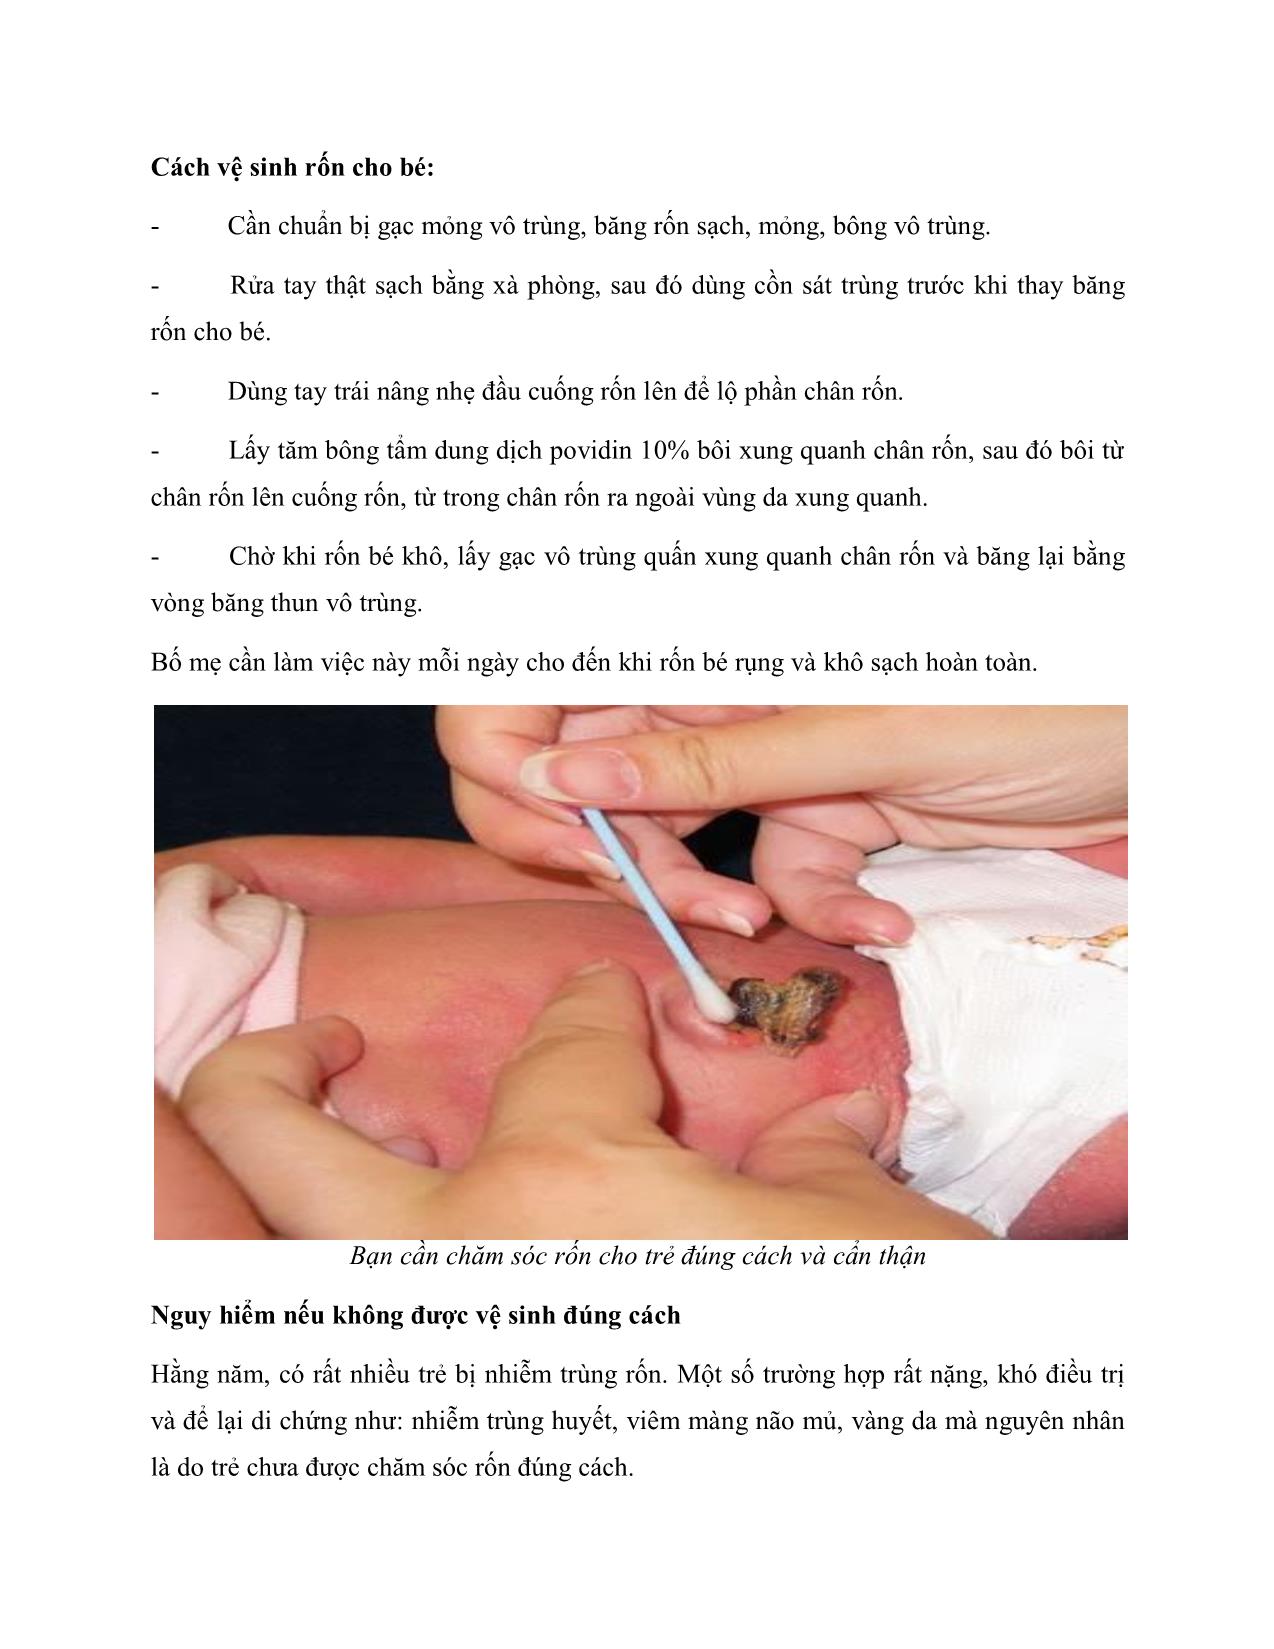 Chăm sóc rốn cho trẻ sơ sinh trang 2